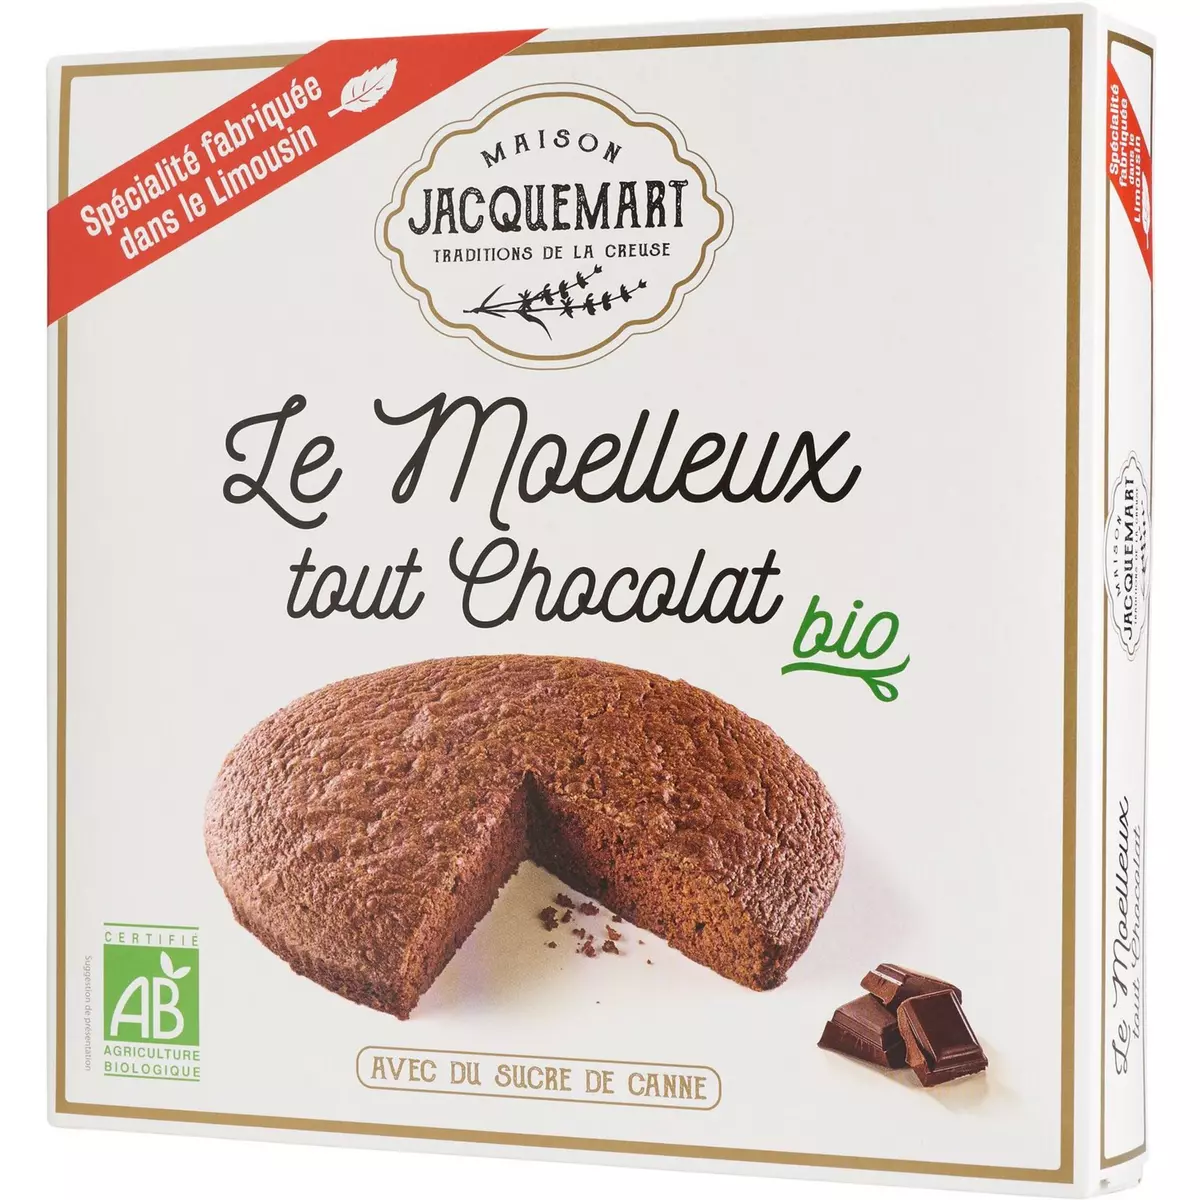 MAISON JACQUEMART Maison Jacquemart Moelleux chocolat bio 250g 250g